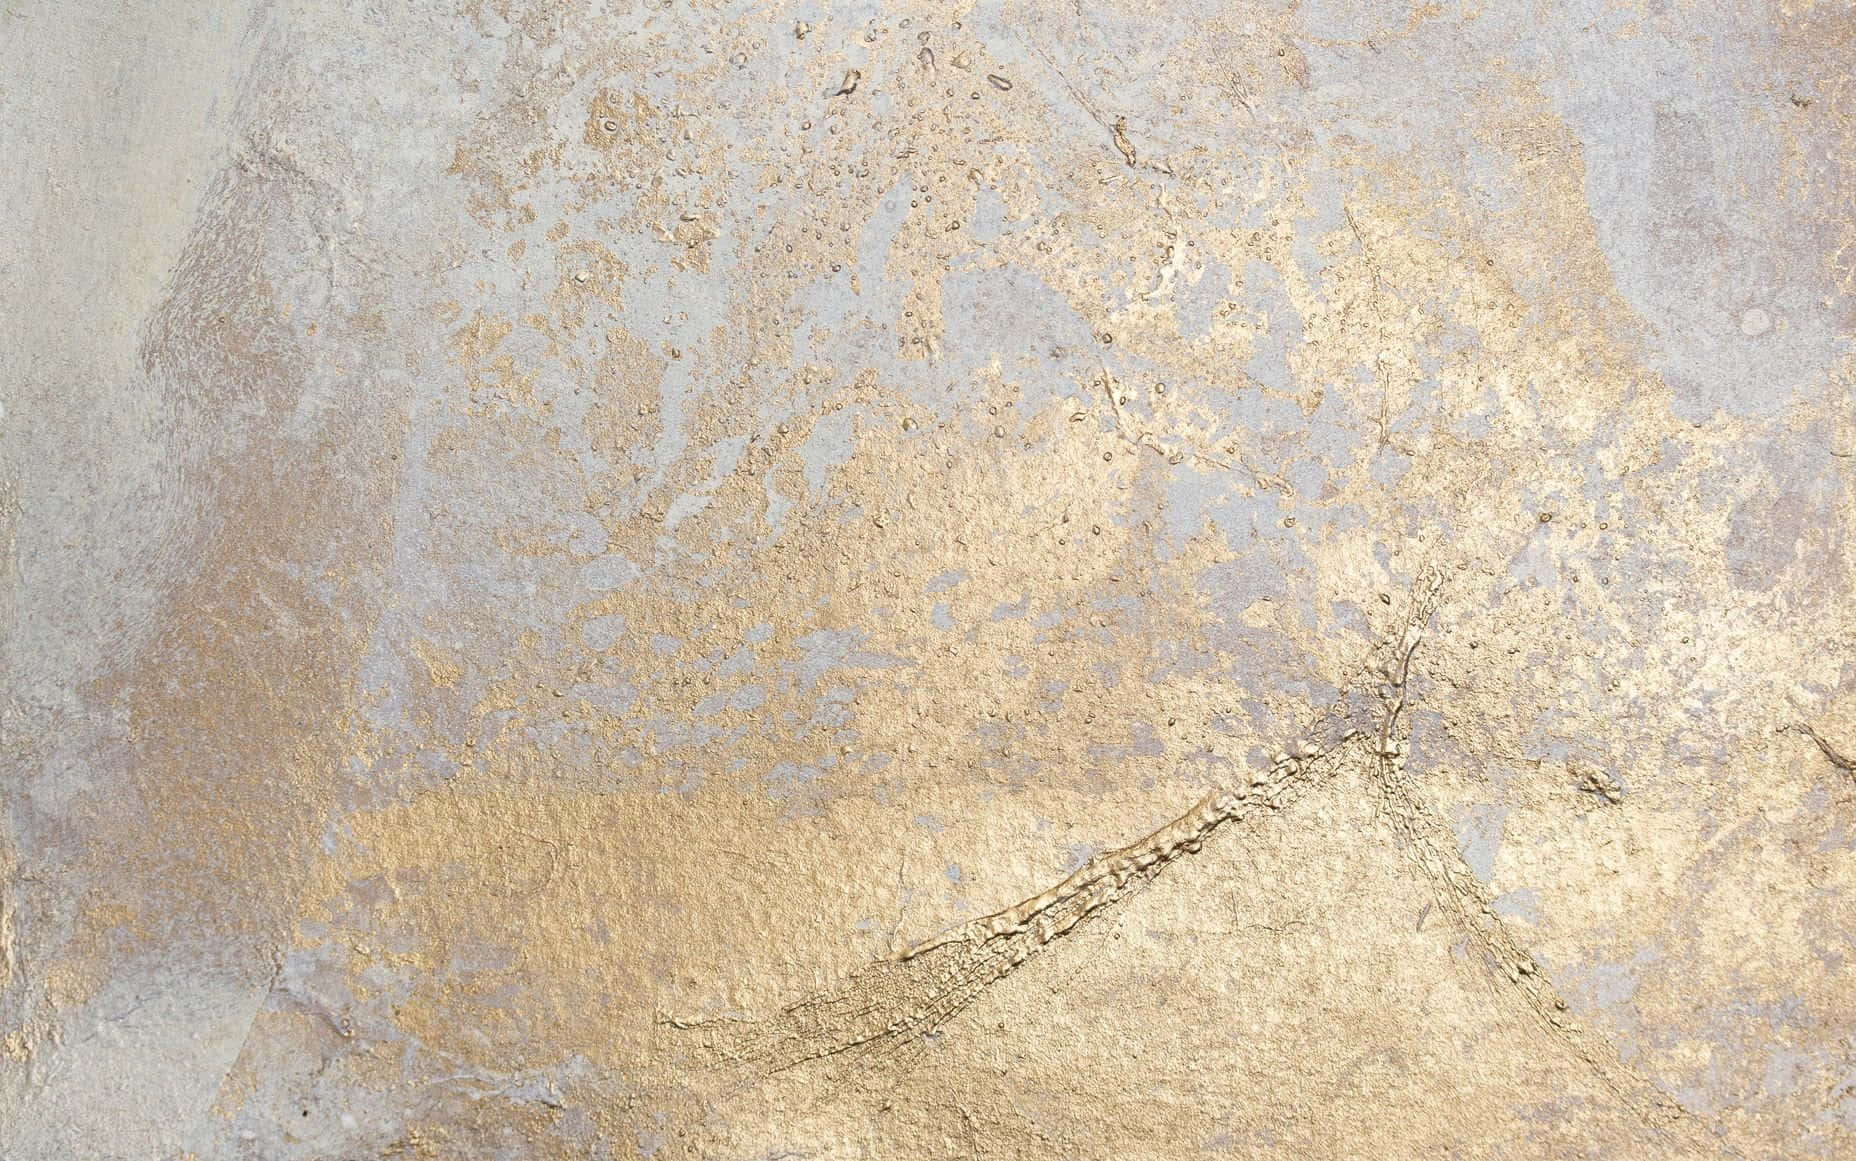 Etnærbillede Af En Væg Malet I Guld Og Sølv.